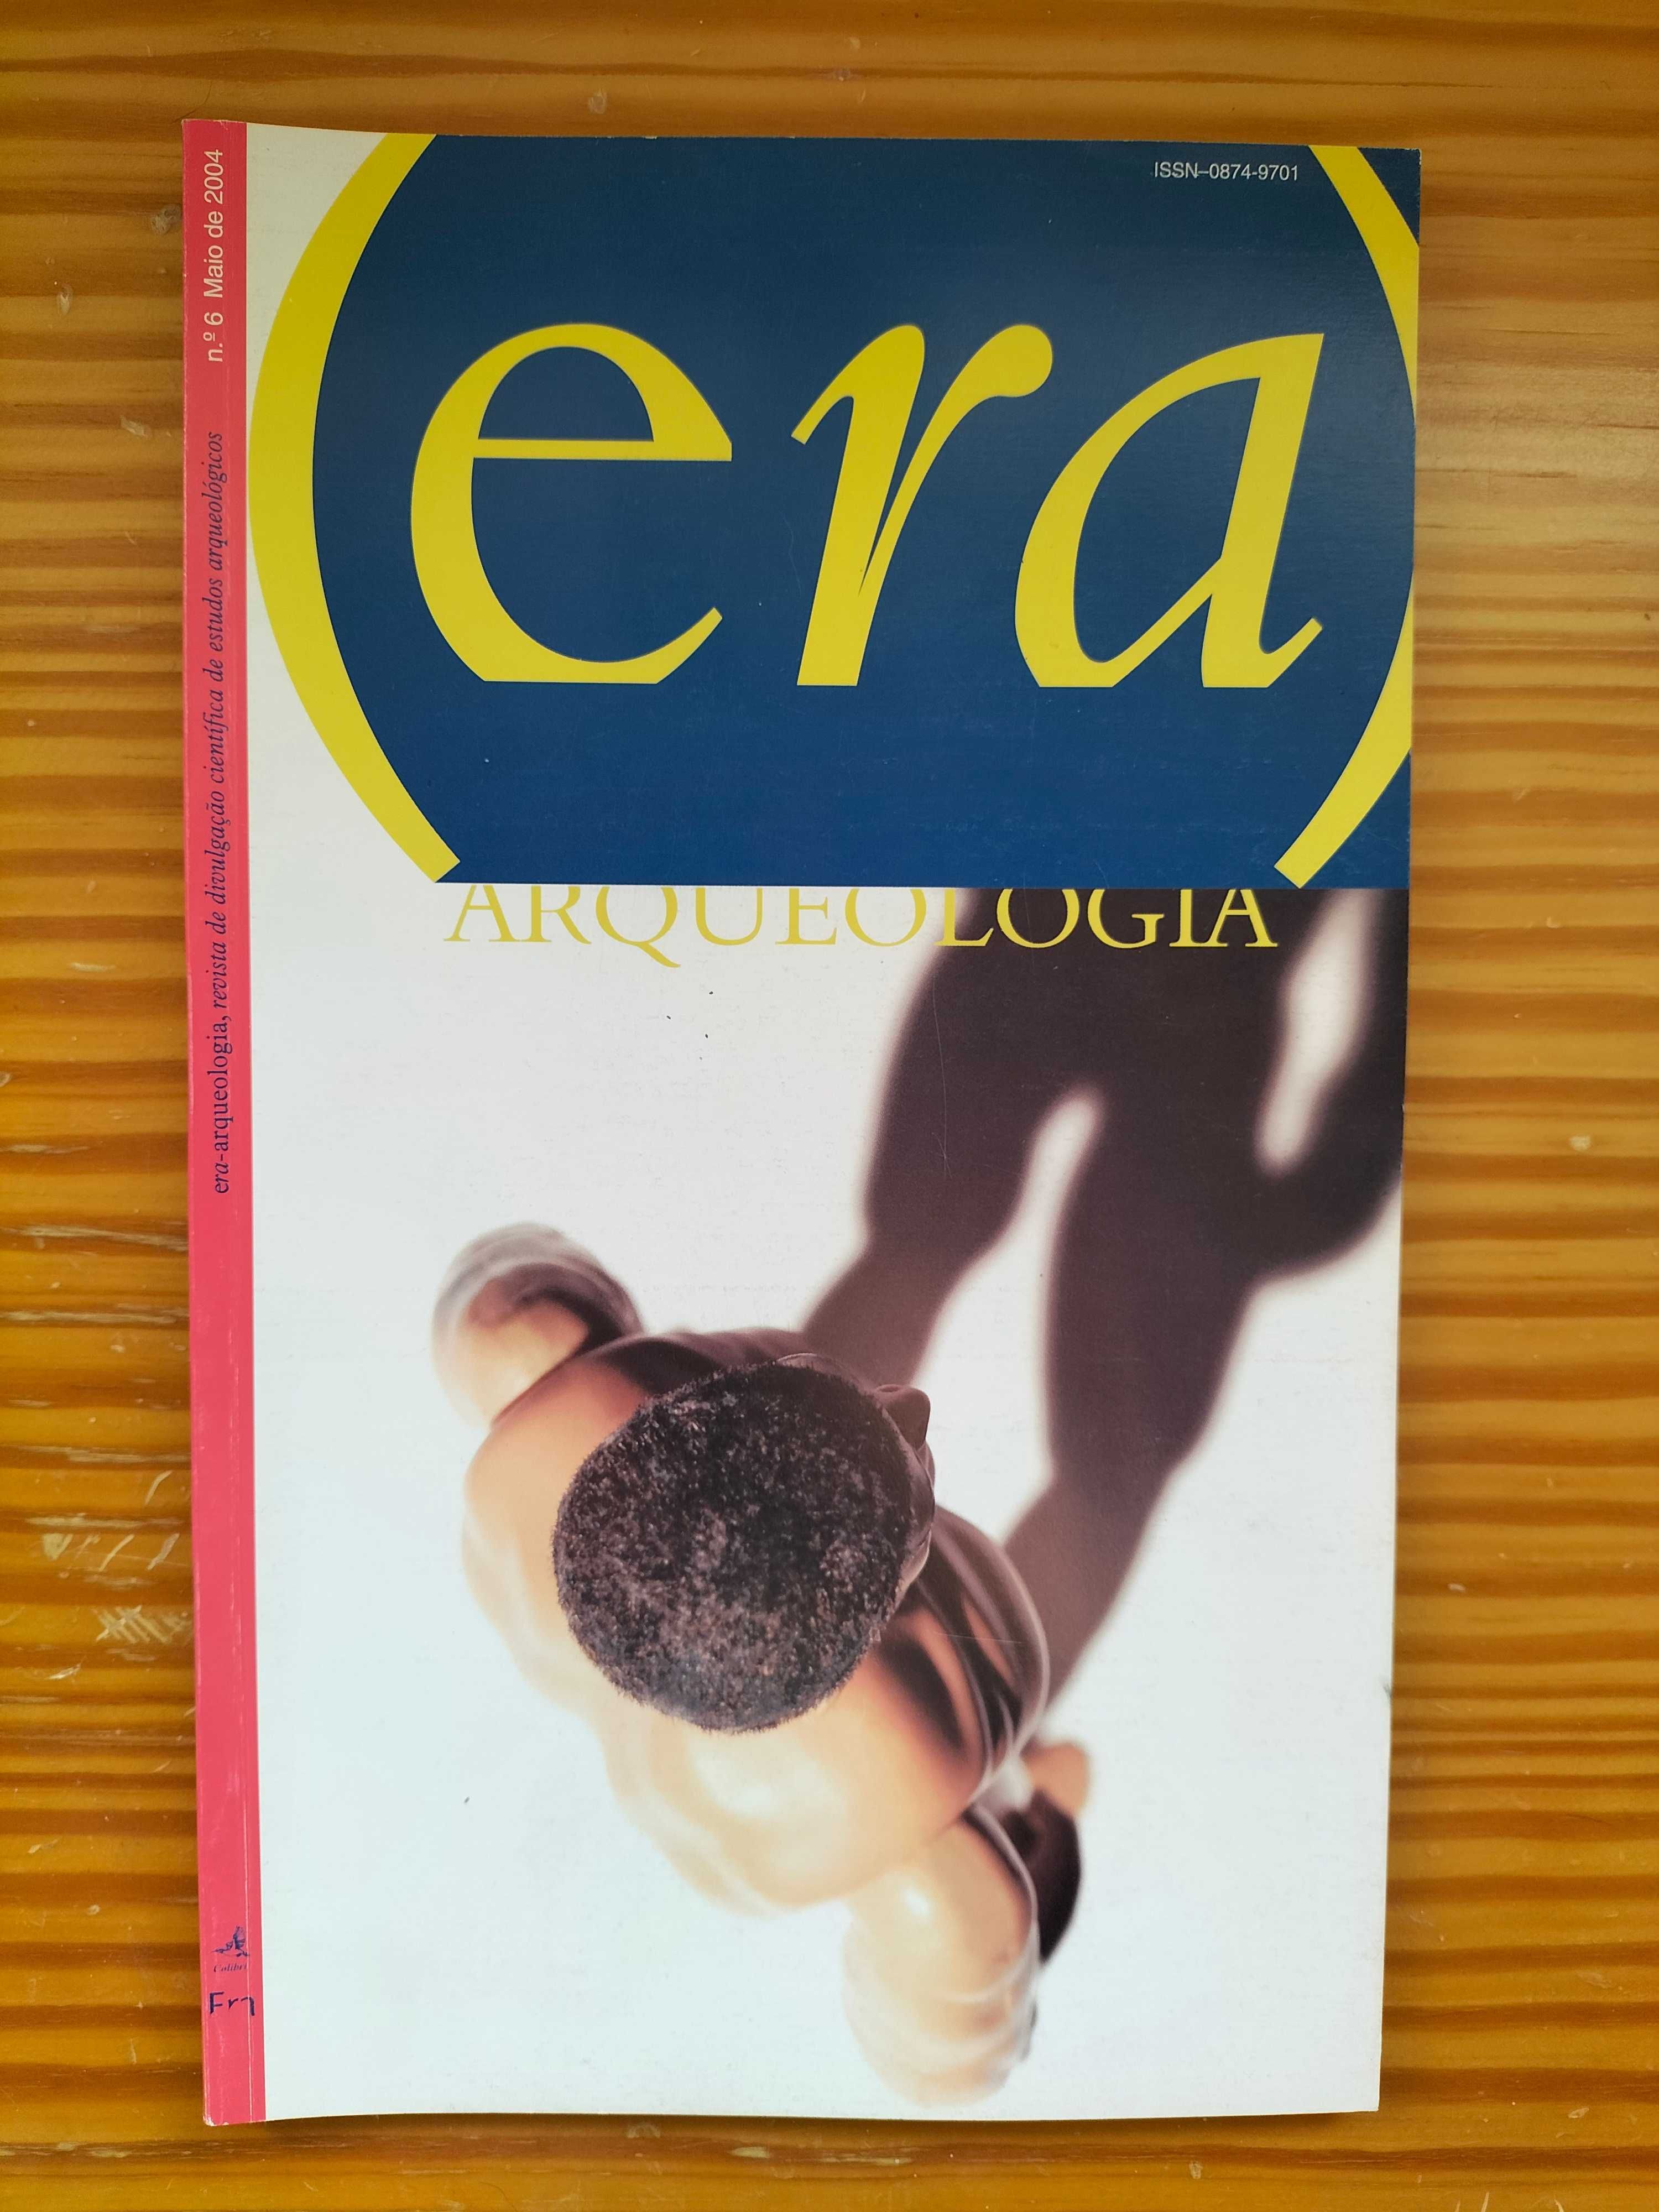 Revistas ERA Arqueologia (1 a 8)